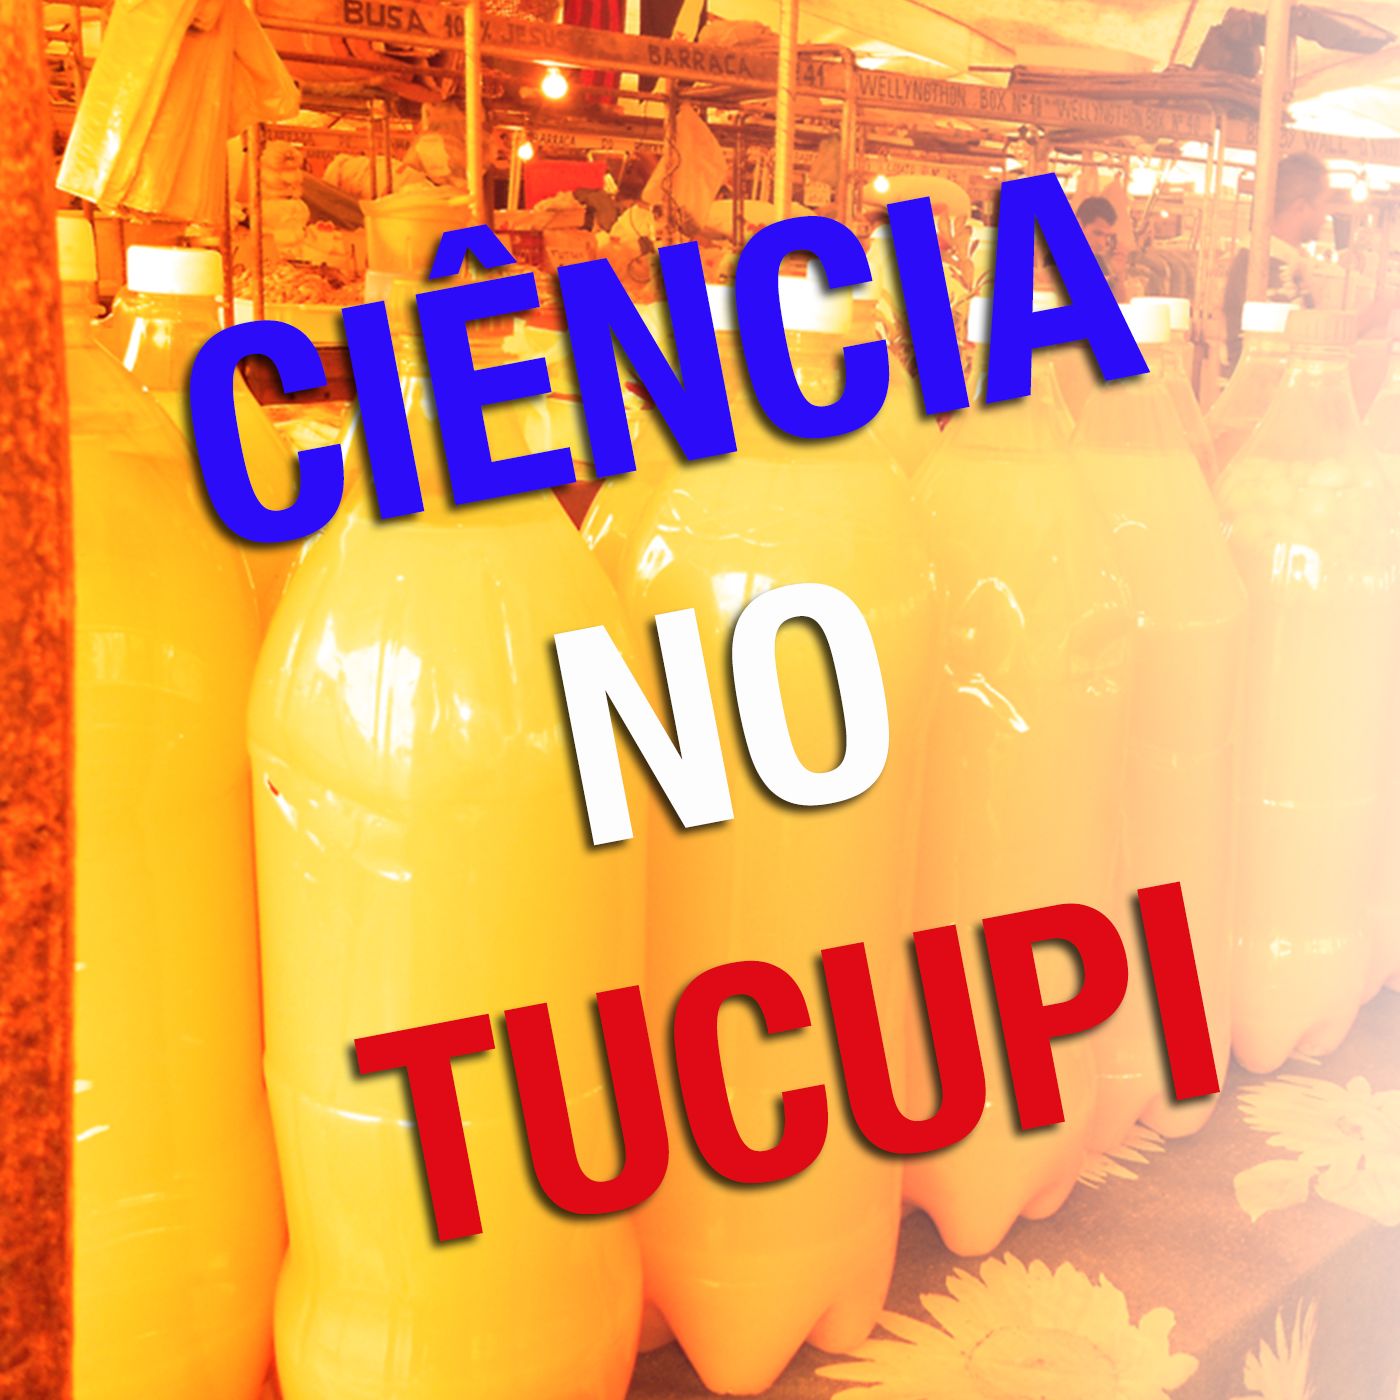 Podcast Ciência no Tucupi